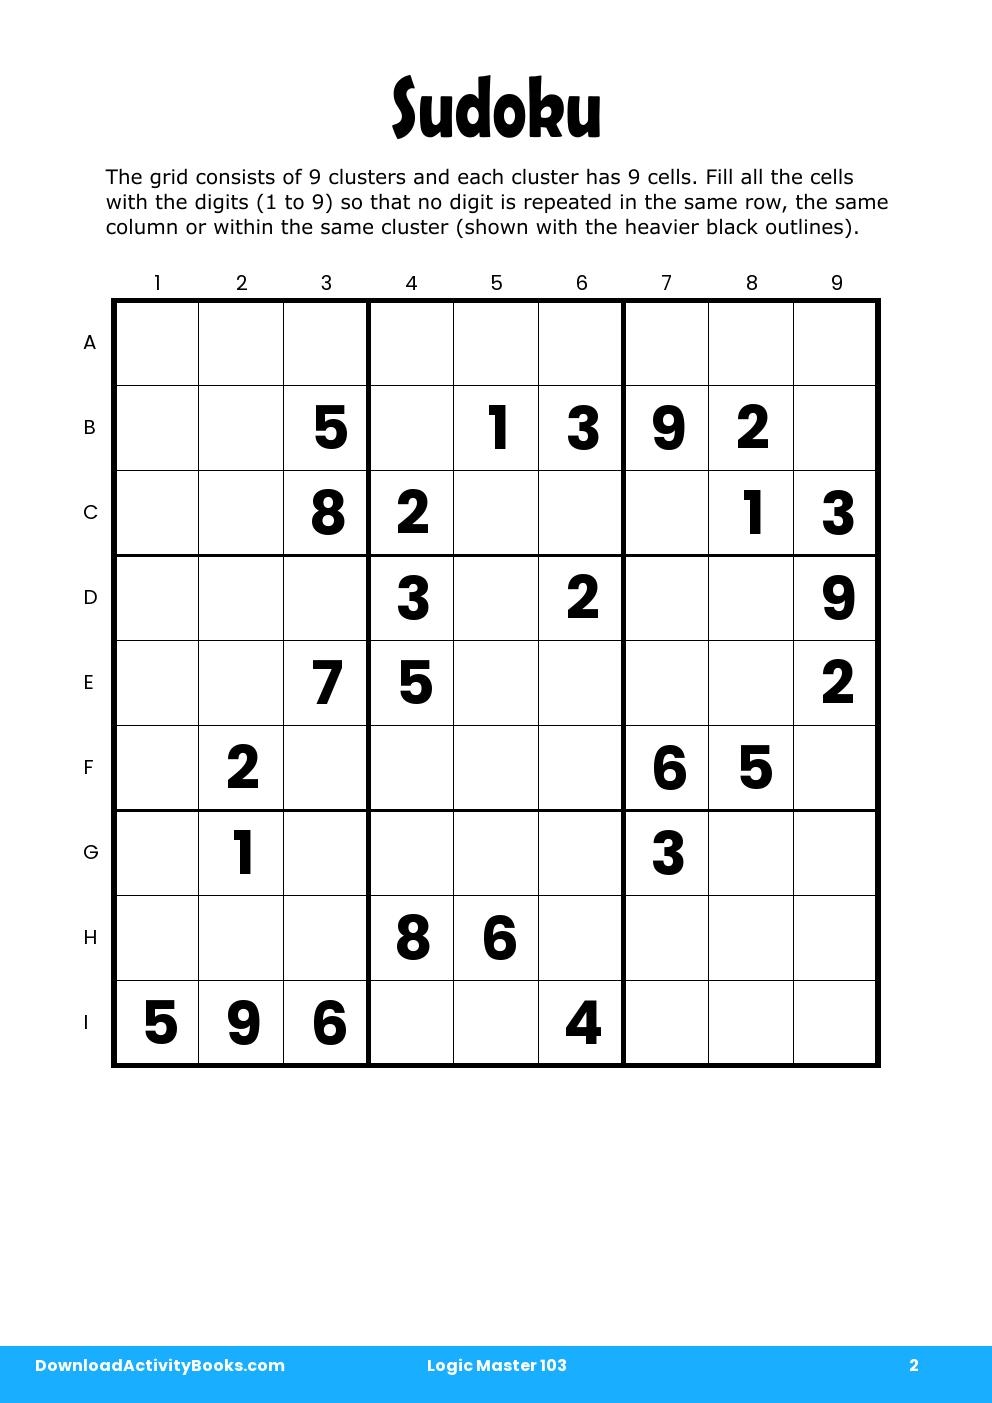 Sudoku in Logic Master 103